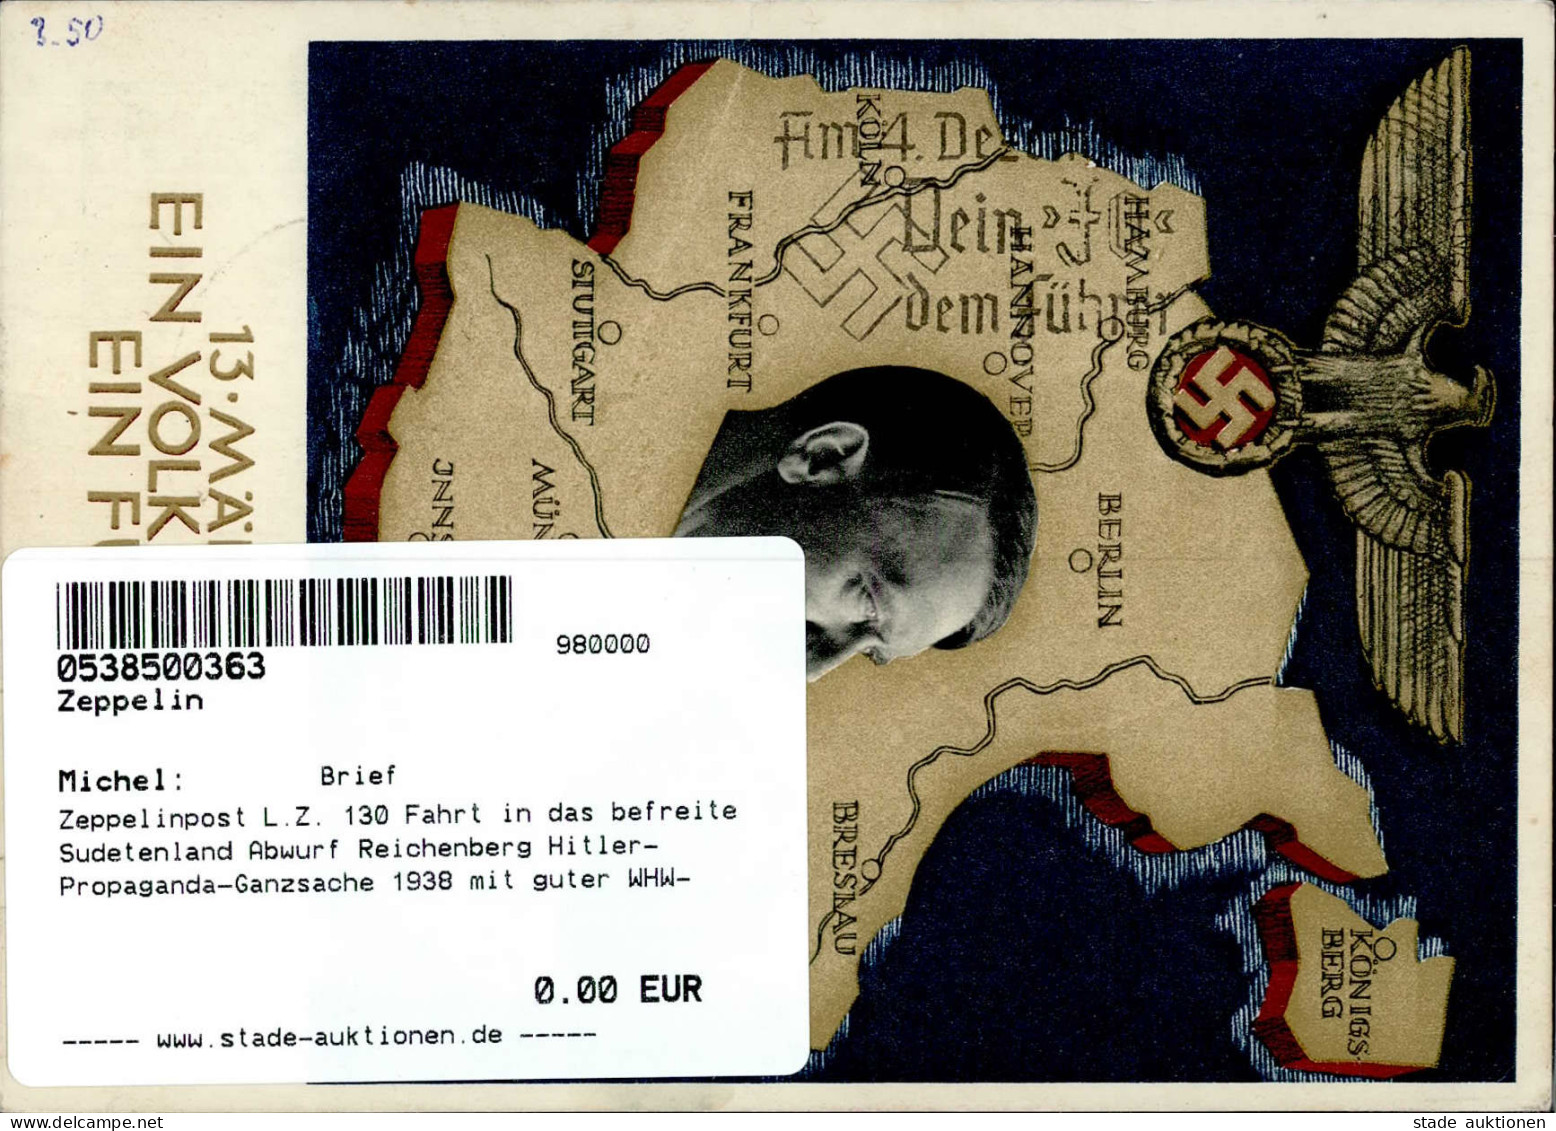 Zeppelinpost L.Z. 130 Fahrt In Das Befreite Sudetenland Abwurf Reichenberg Hitler-Propaganda-Ganzsache 1938 Mit Guter WH - Dirigibili